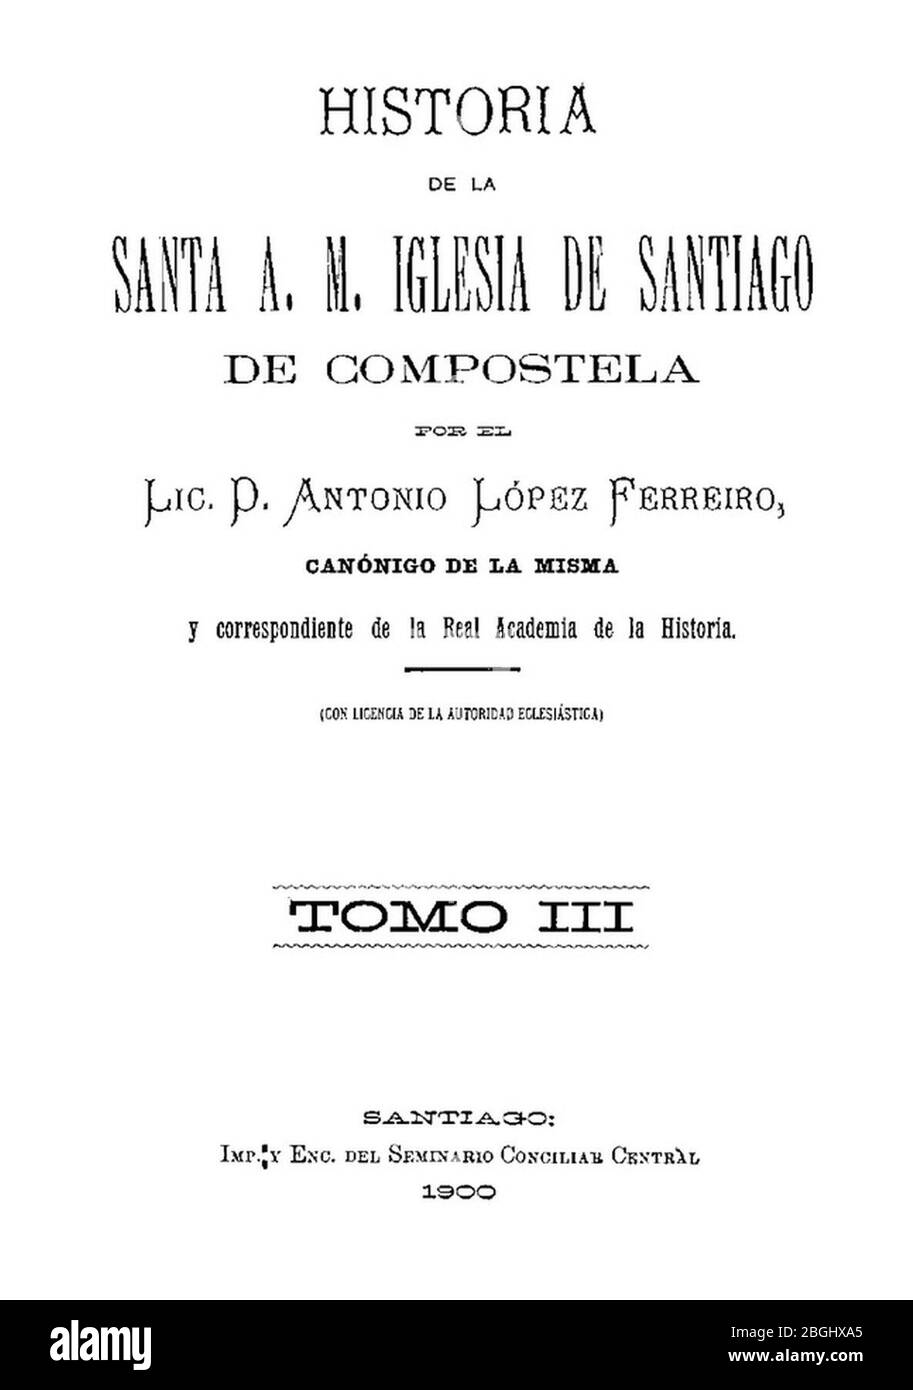 Historia de la Santa A. M. Iglesia de Santiago de Compostela por el Lic. Antonio López Ferreiro, canónigo de la misma, 1900, Tomo III. Foto Stock